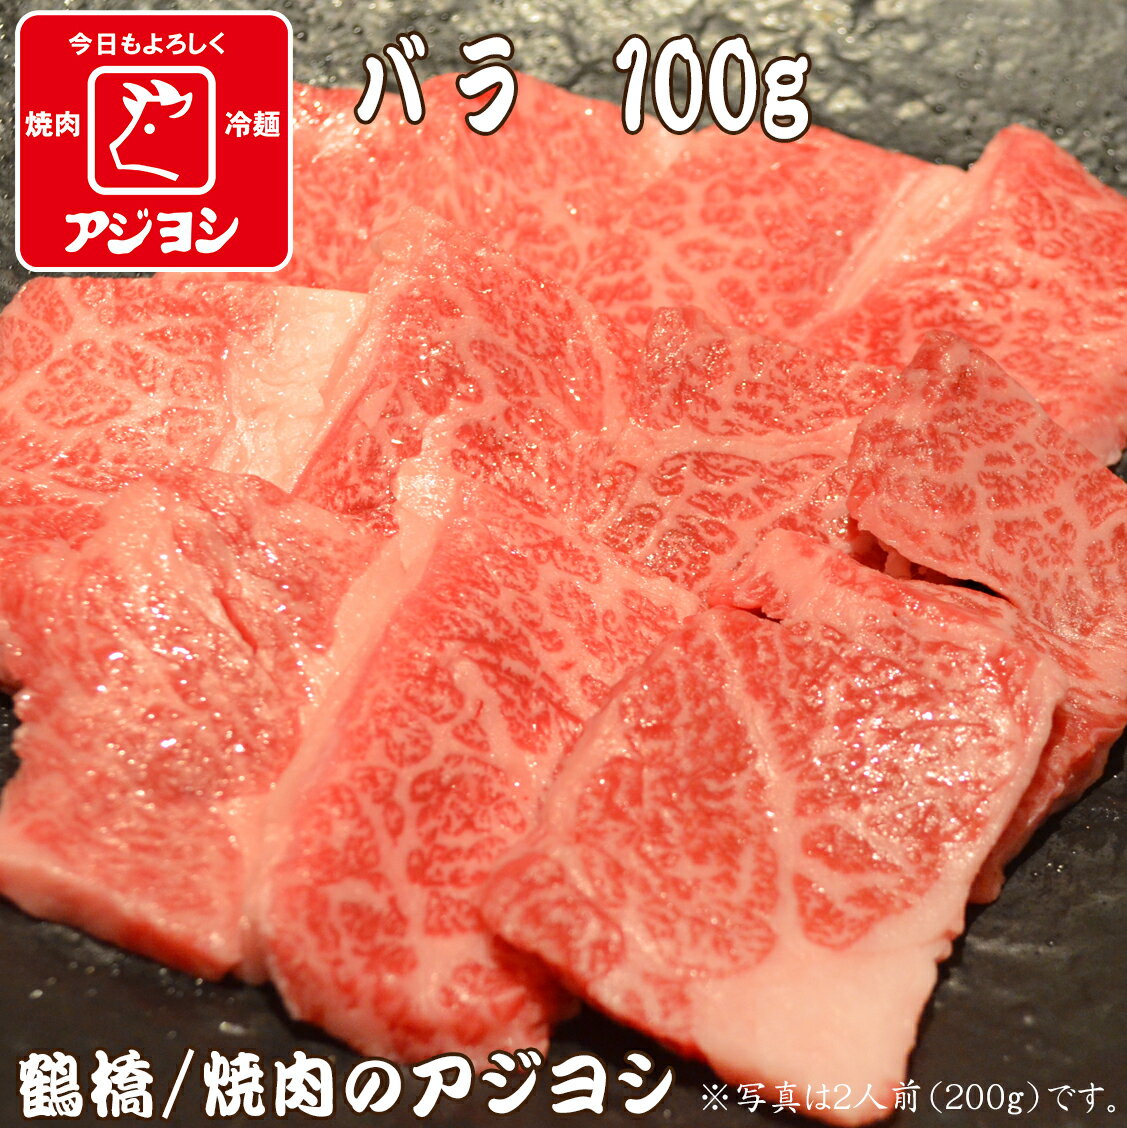 【鶴橋・焼肉のアジヨシ】牛肉 国産 バラ100g